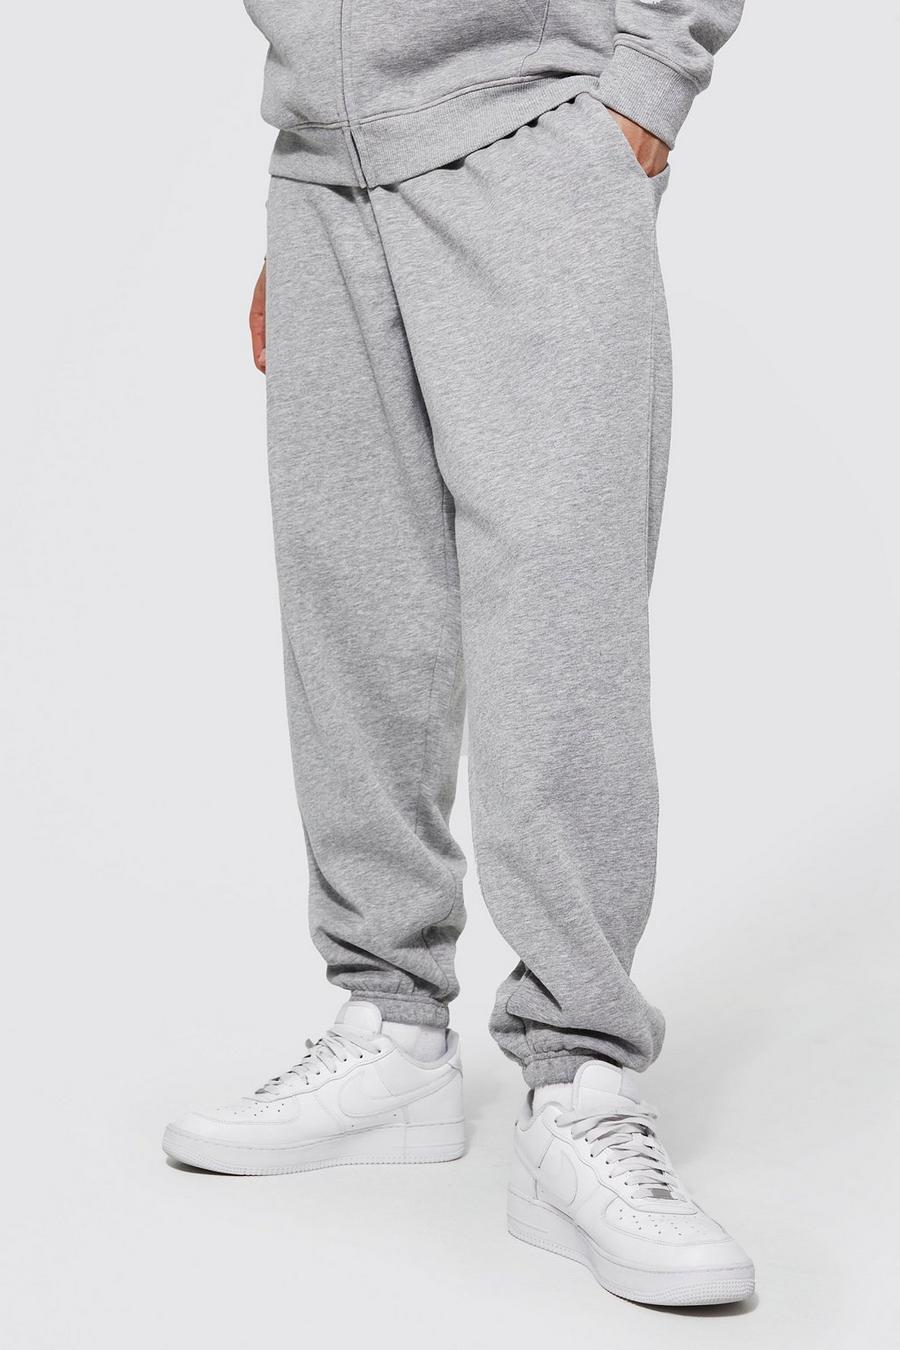 Pantalón deportivo Tall básico holgado con algodón ecológico, Grey marl grigio